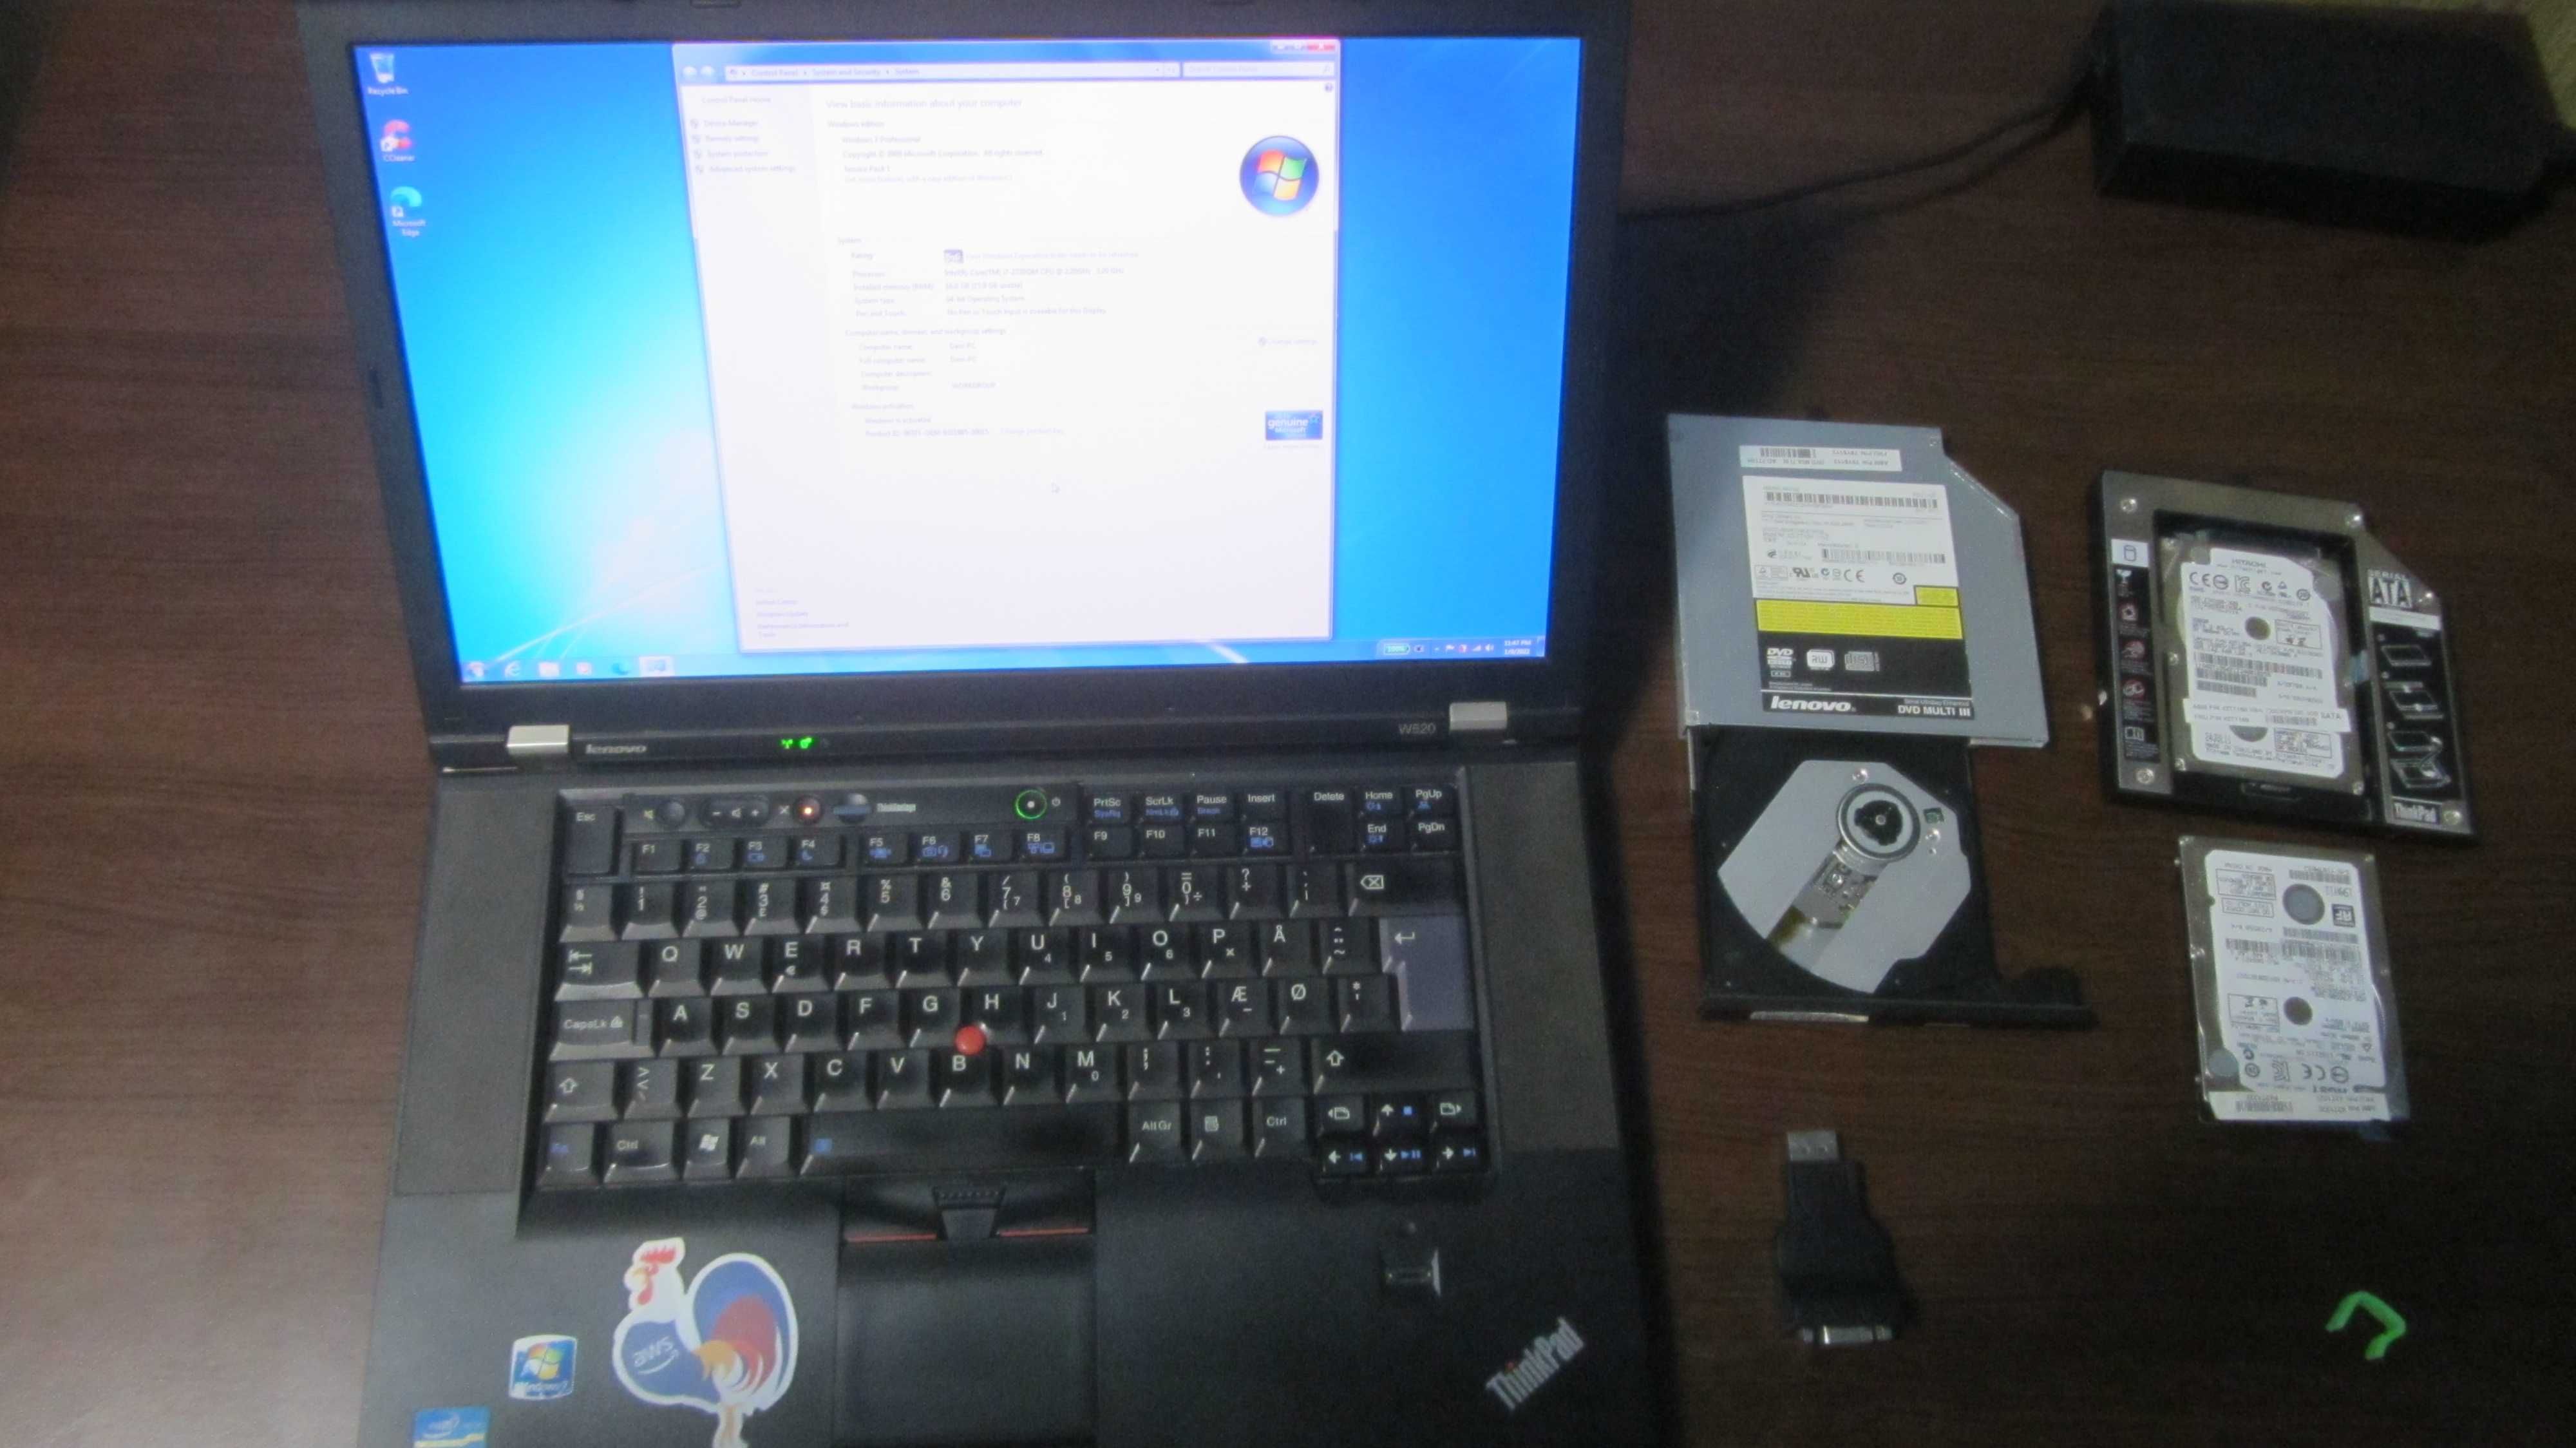 Thinkpad W520 i7, 15.6" FHD, RAM 16GB, SSD 256GB, HDD 320GB